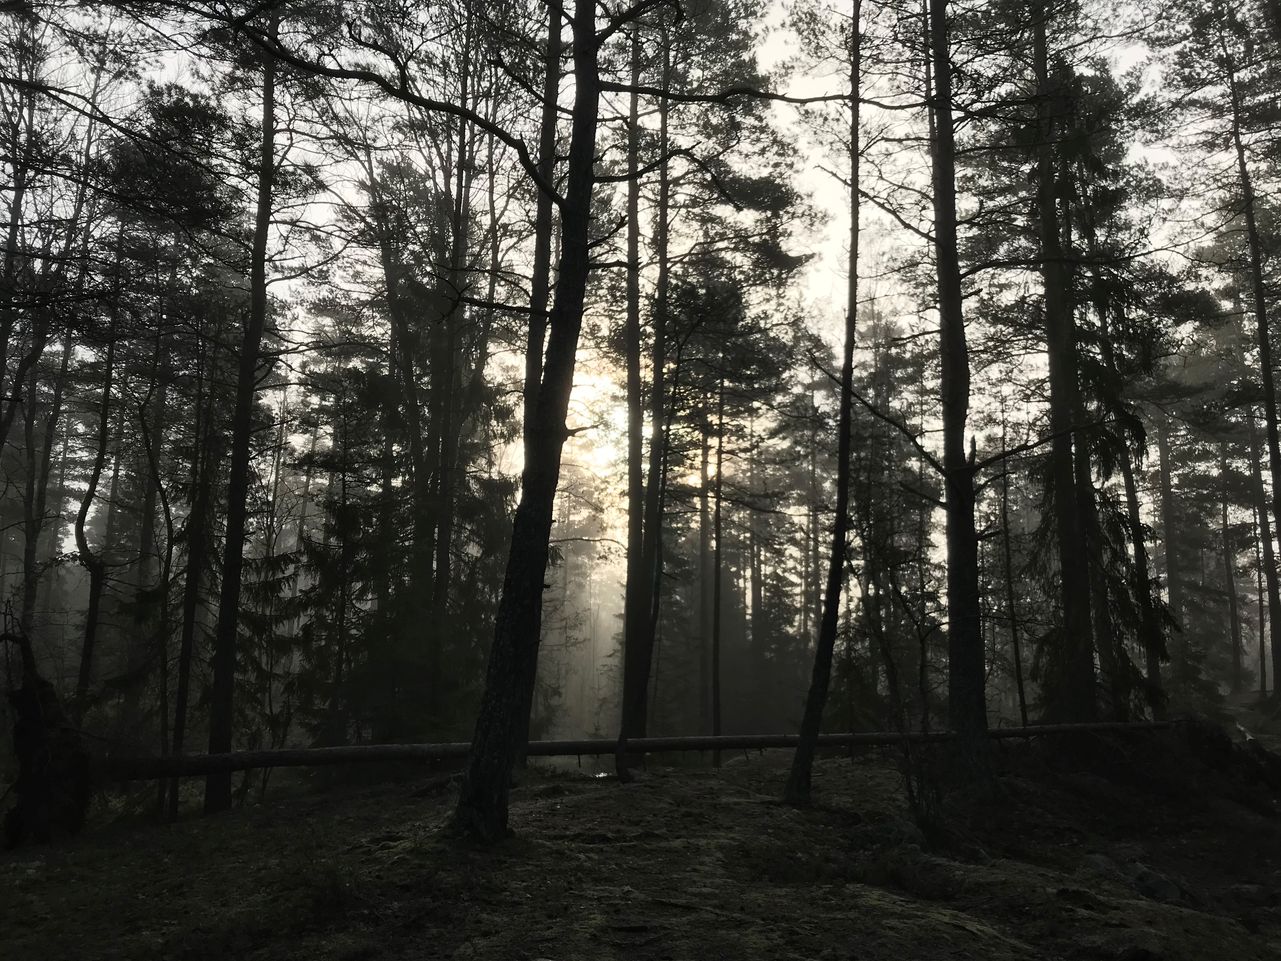 Skog